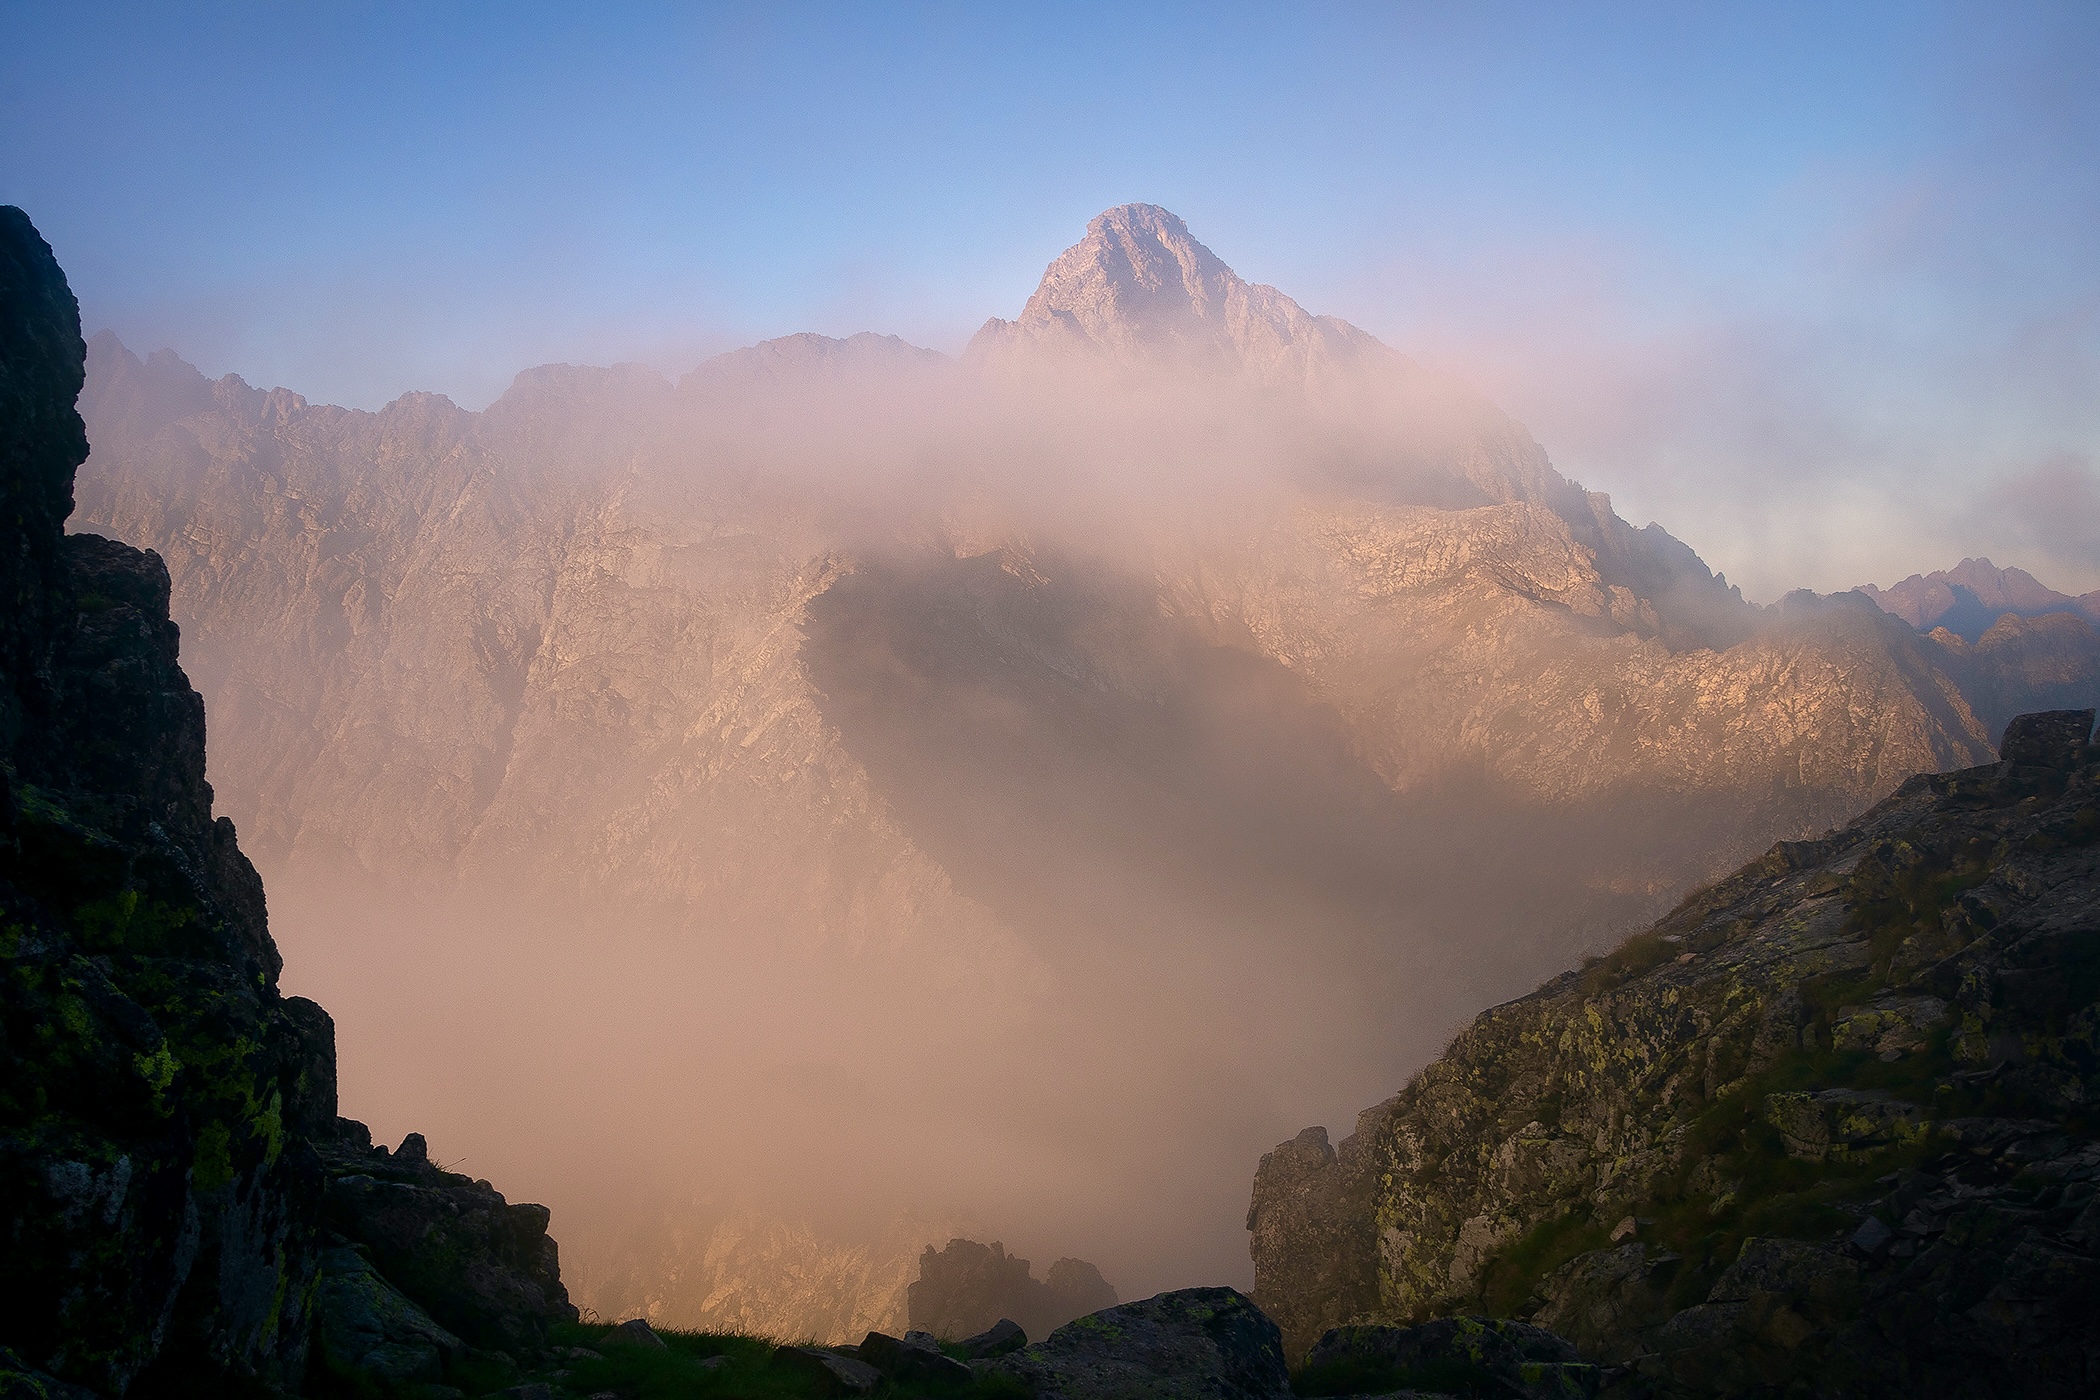 Kolový Peak in Clouds